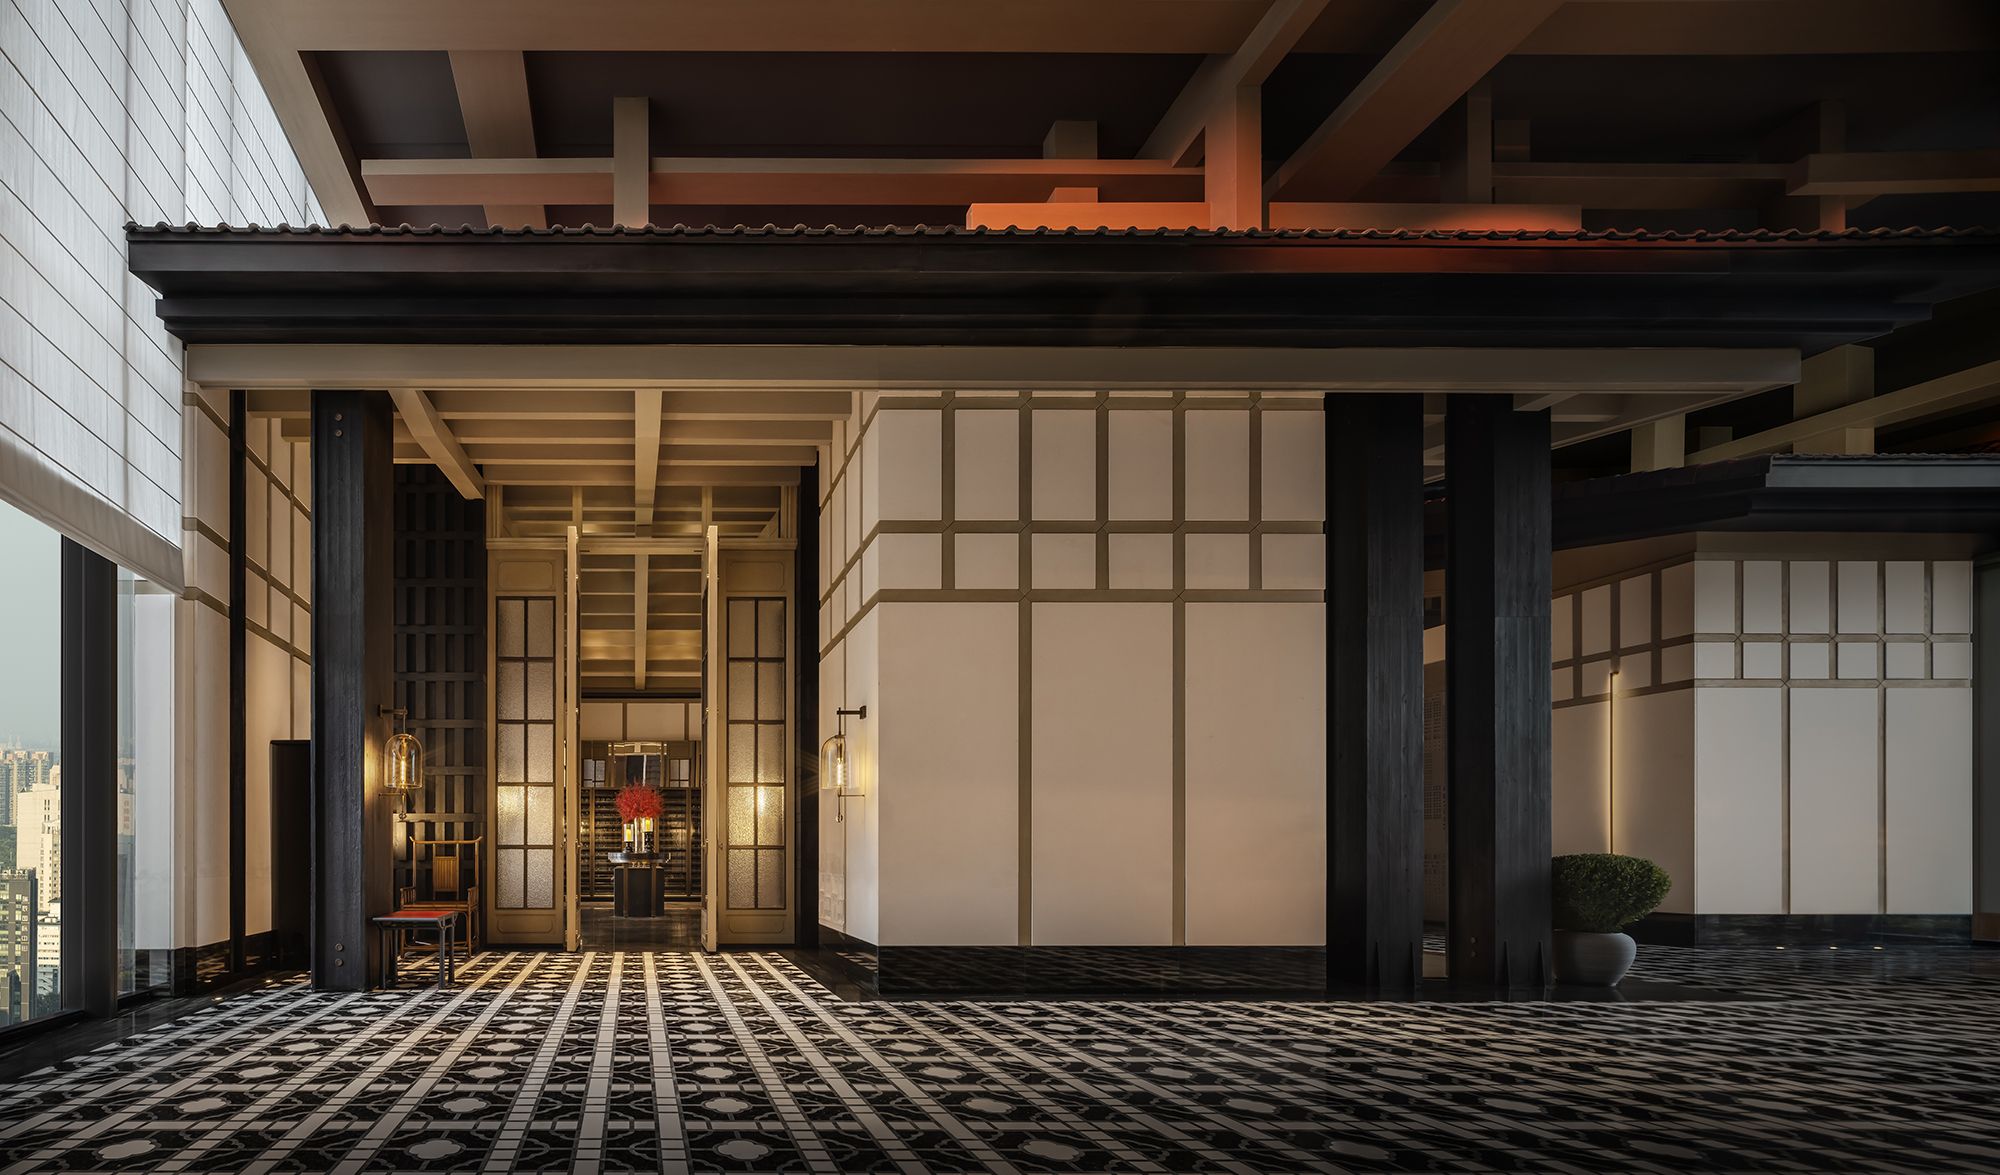 图片[3]|成都木棉大酒店|ART-Arrakis | 建筑室内设计的创新与灵感